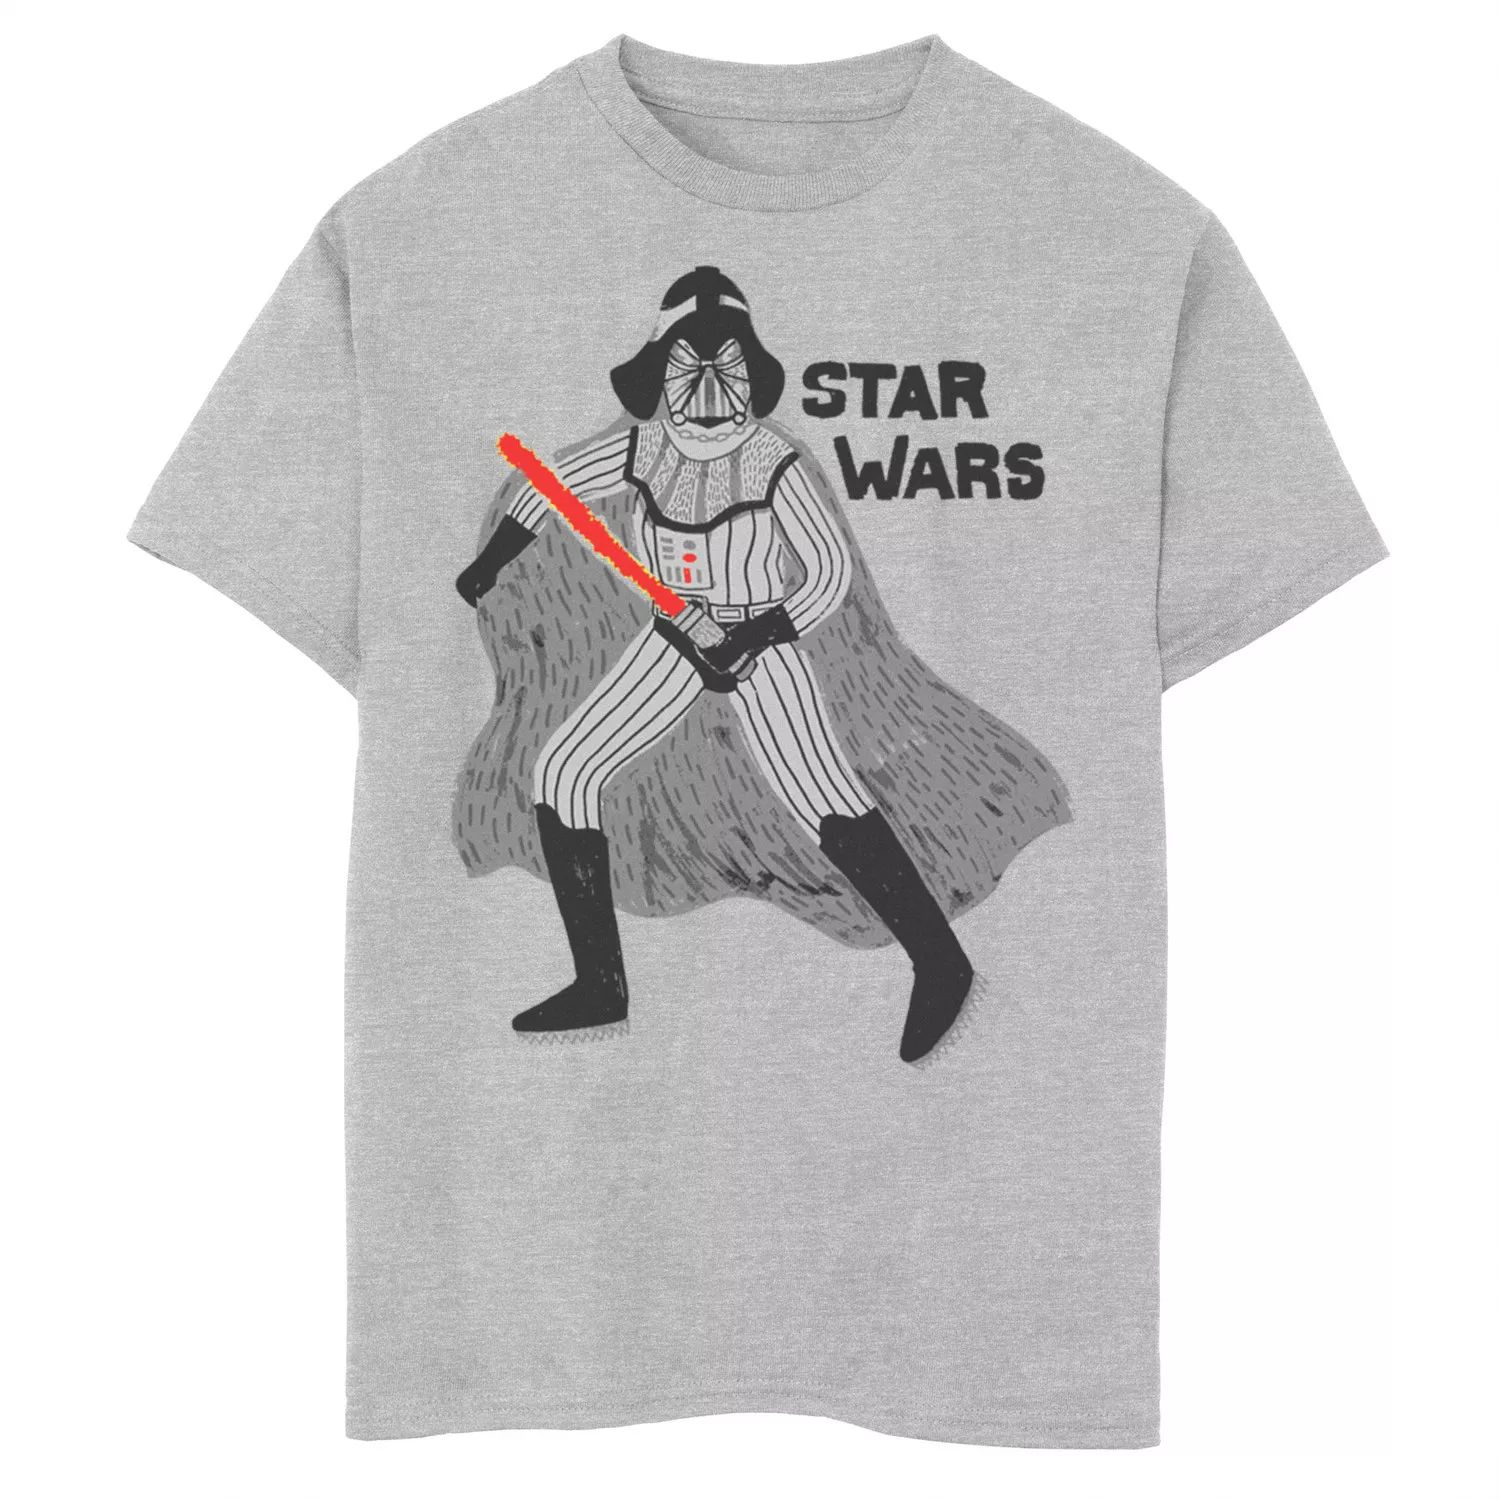 Футболка с рисунком Дарта Вейдера для мальчиков 8–20 лет с рисунком «Звездные войны» Star Wars футболка с рисунком дарта вейдера для мальчиков 8–20 лет посвященная звездным войнам star wars